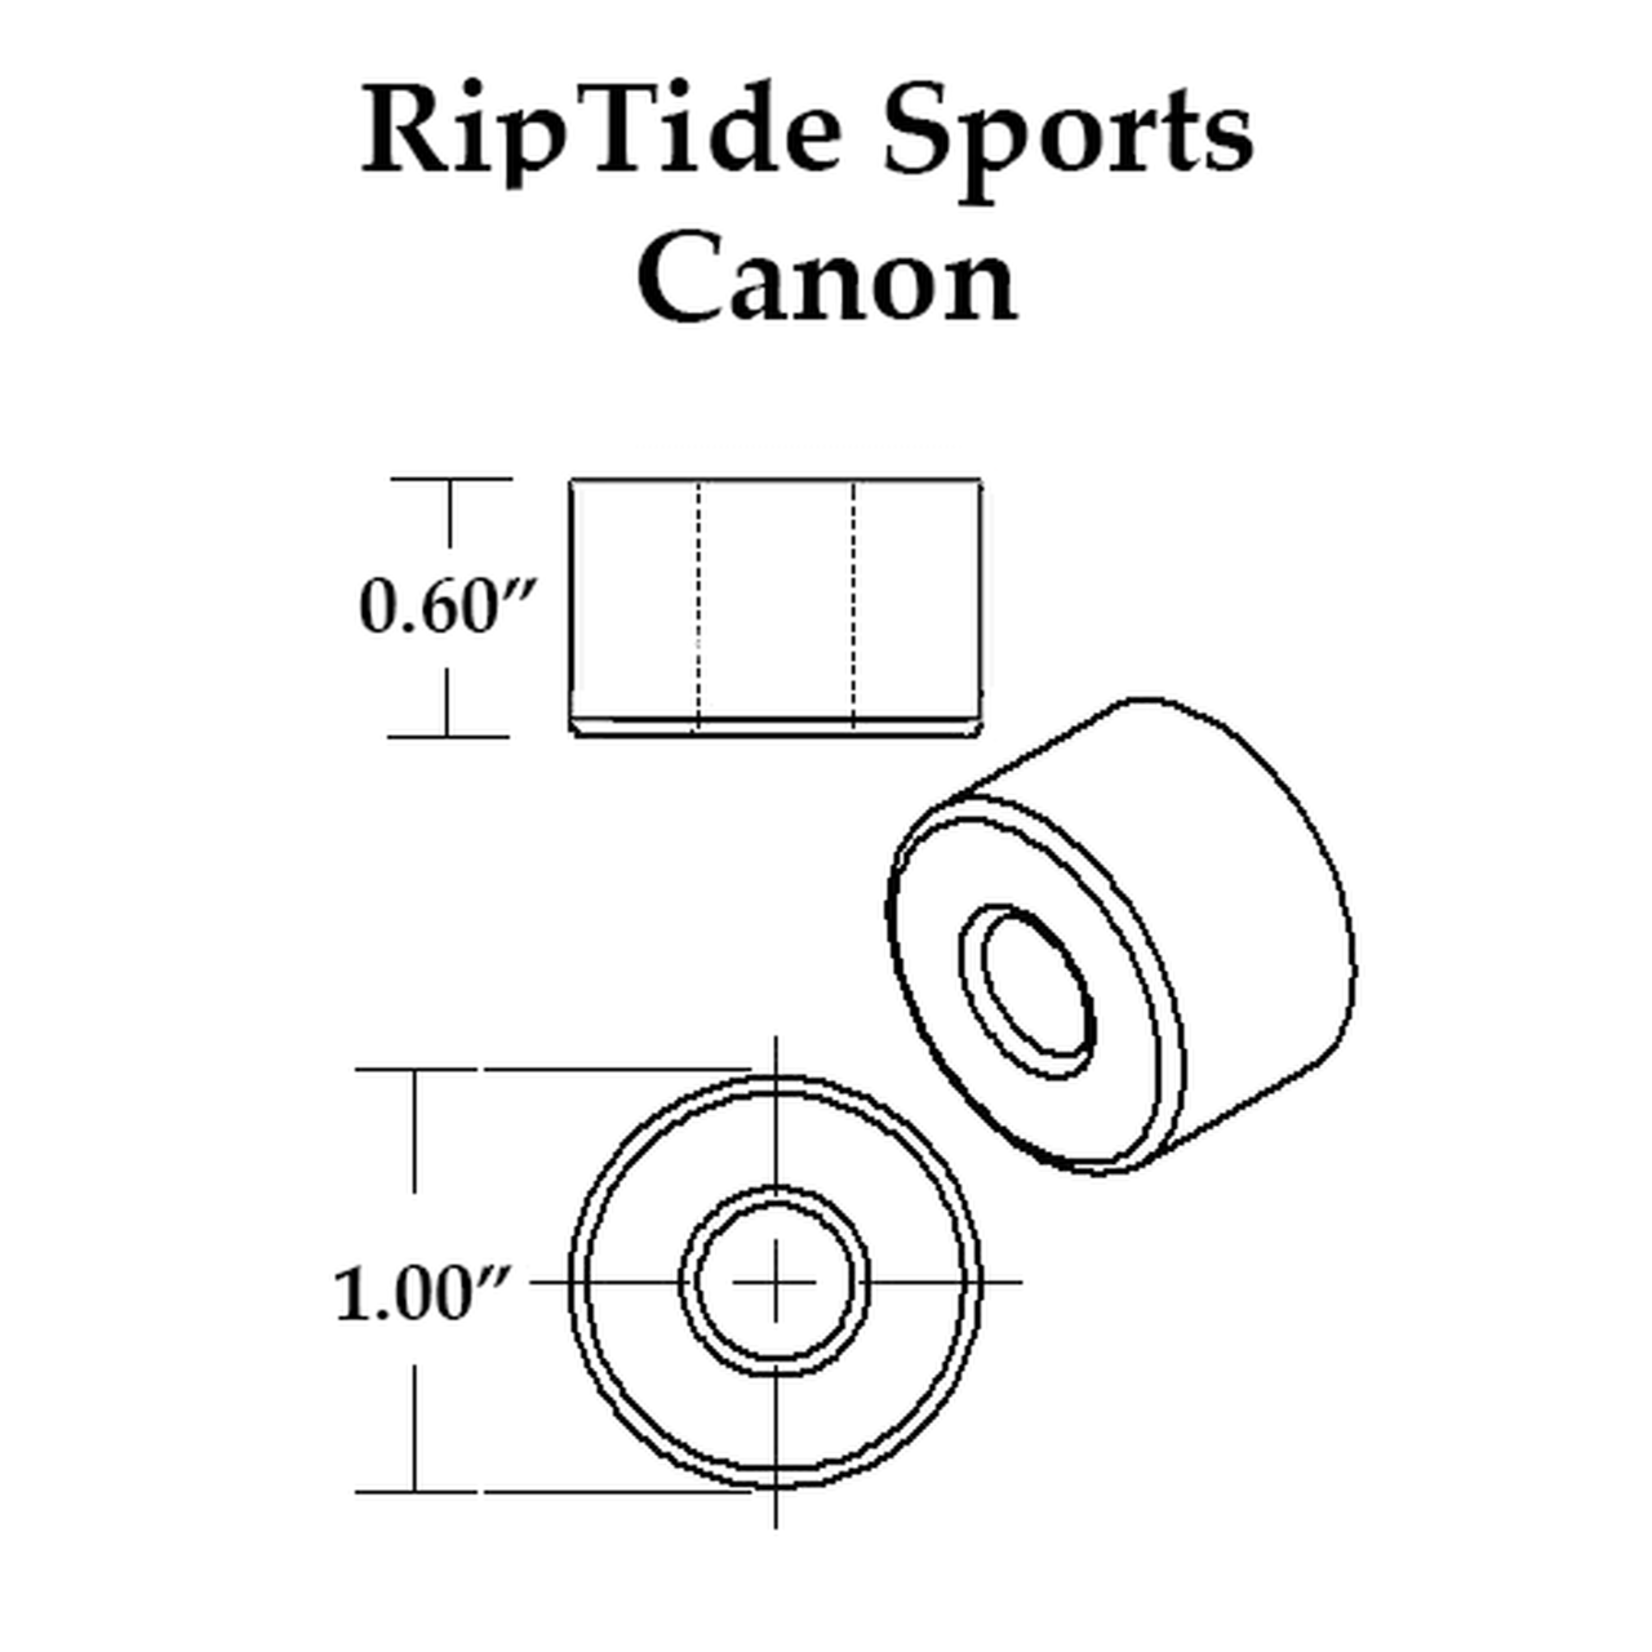 Riptide Sports APS Canon